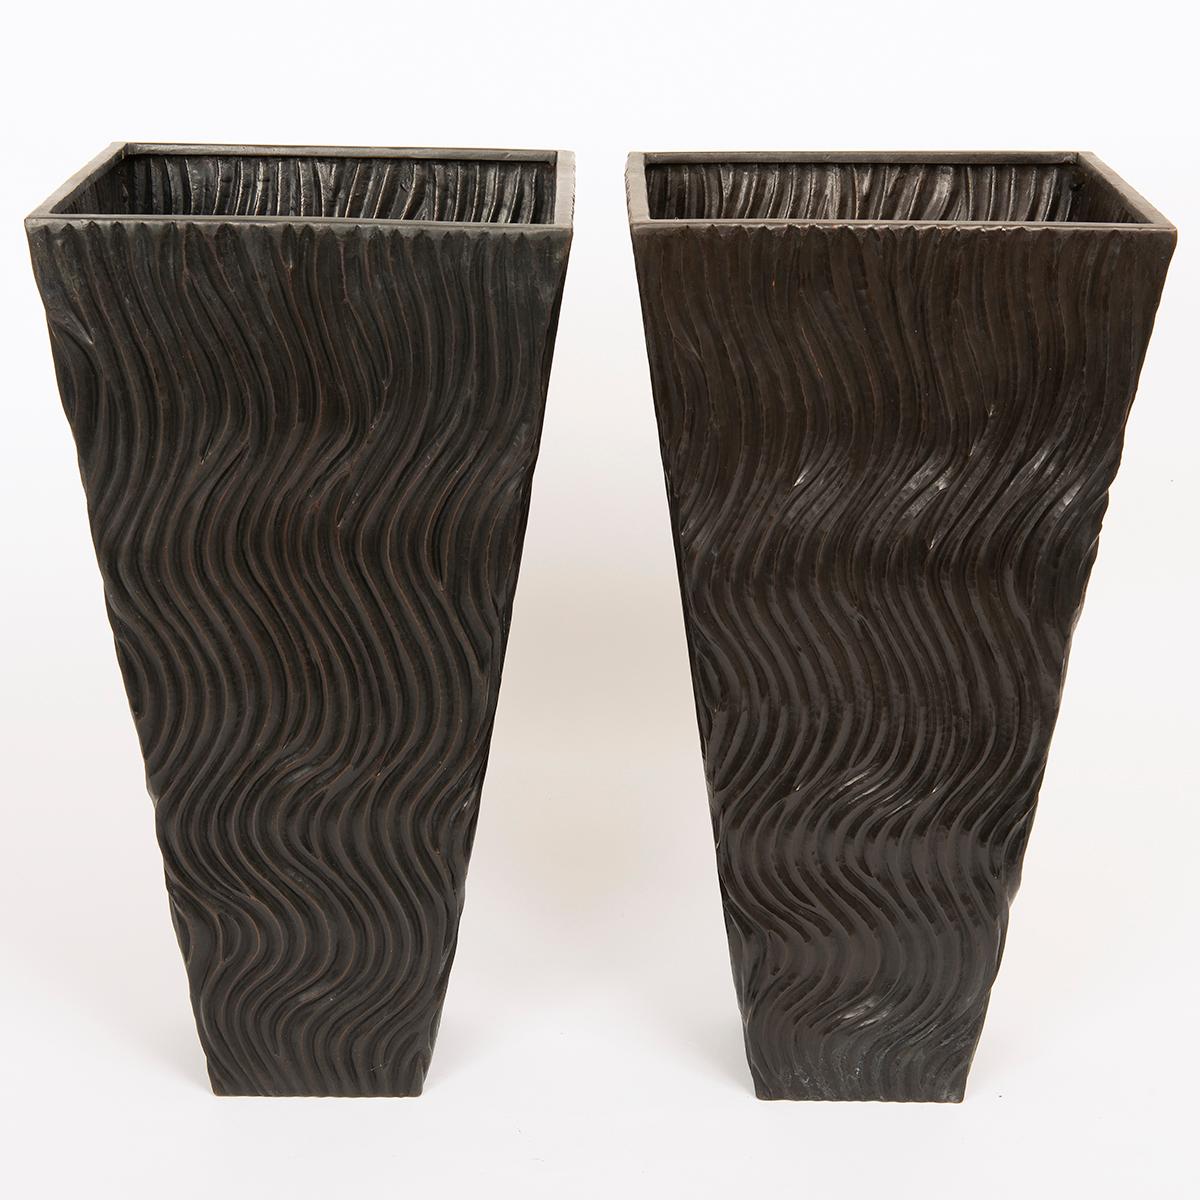 Ein einzigartiges Paar großer, handgefertigter Vasen aus repoussiertem Kupfer, von Robert Kuo.

Die dekorativen Objekte von Robert Kuo sind weltberühmt und werden in Museen und öffentlichen Räumen ausgestellt. Repousse ist die Kunst, Metall, in